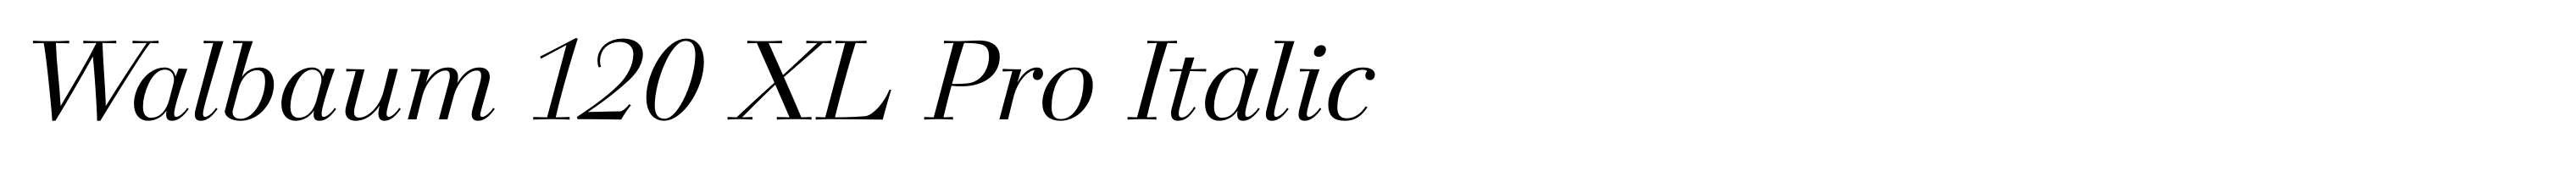 Walbaum 120 XL Pro Italic